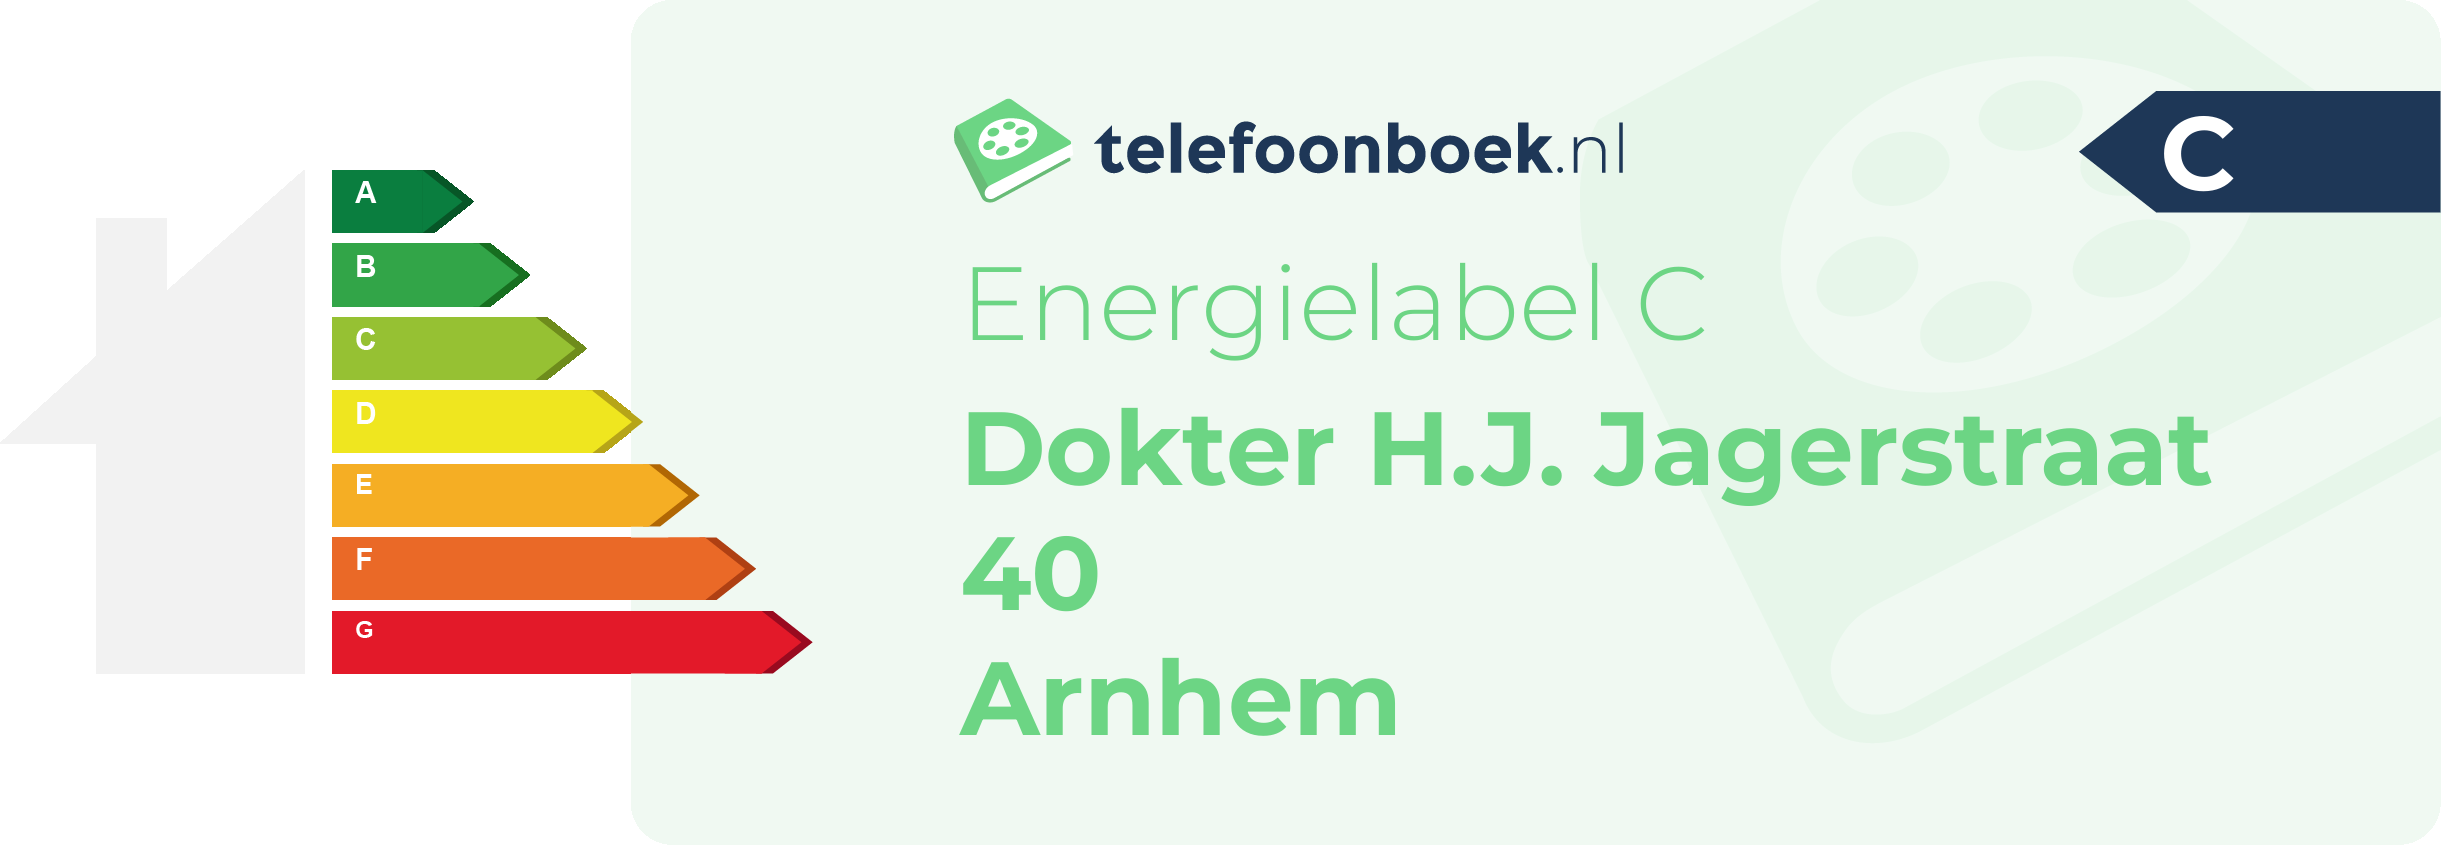 Energielabel Dokter H.J. Jagerstraat 40 Arnhem